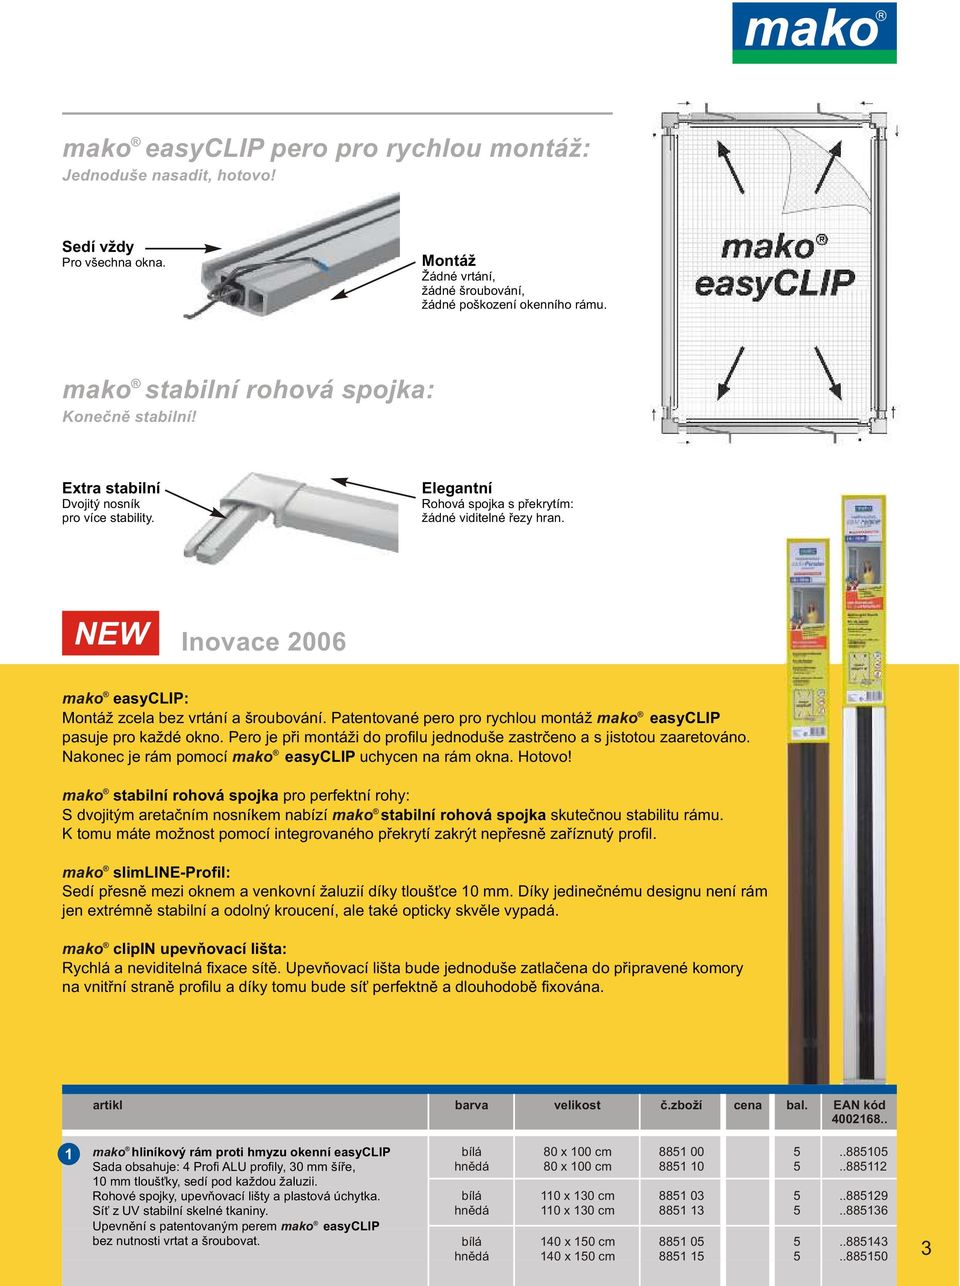 NEW Inovace 00 mako easyclip: Montáž zcela bez vrtání a šroubování. Patentované pero pro rychlou montáž mako easyclip pasuje pro každé okno.